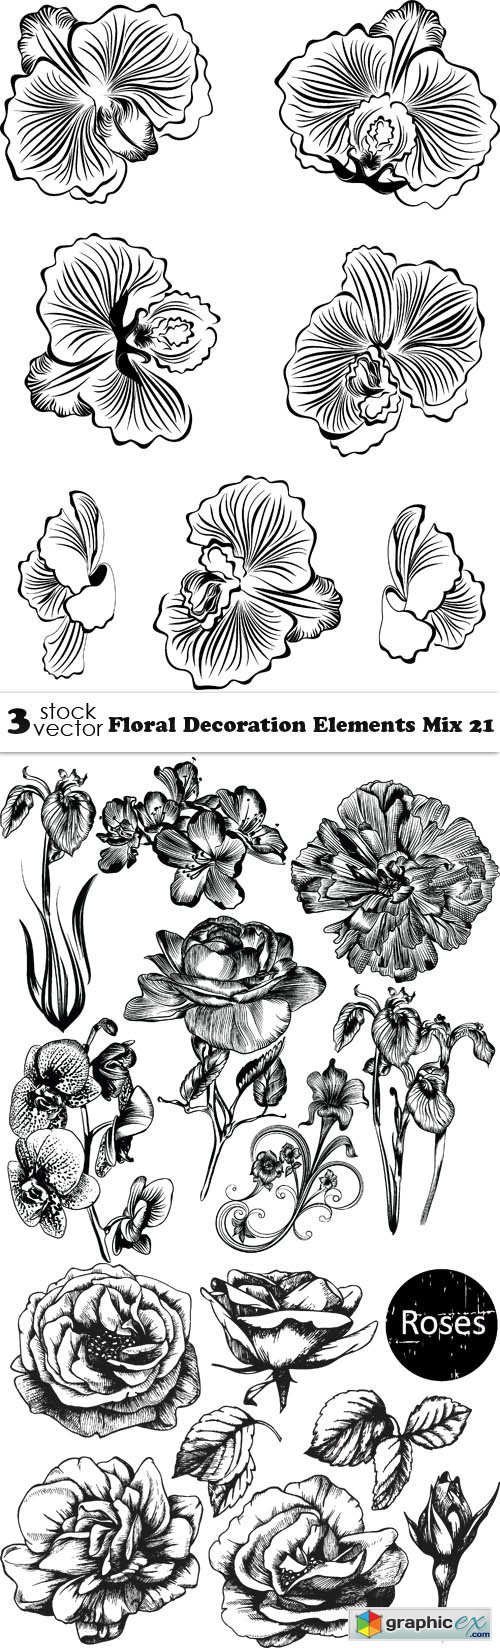 Floral Decoration Elements Mix 21